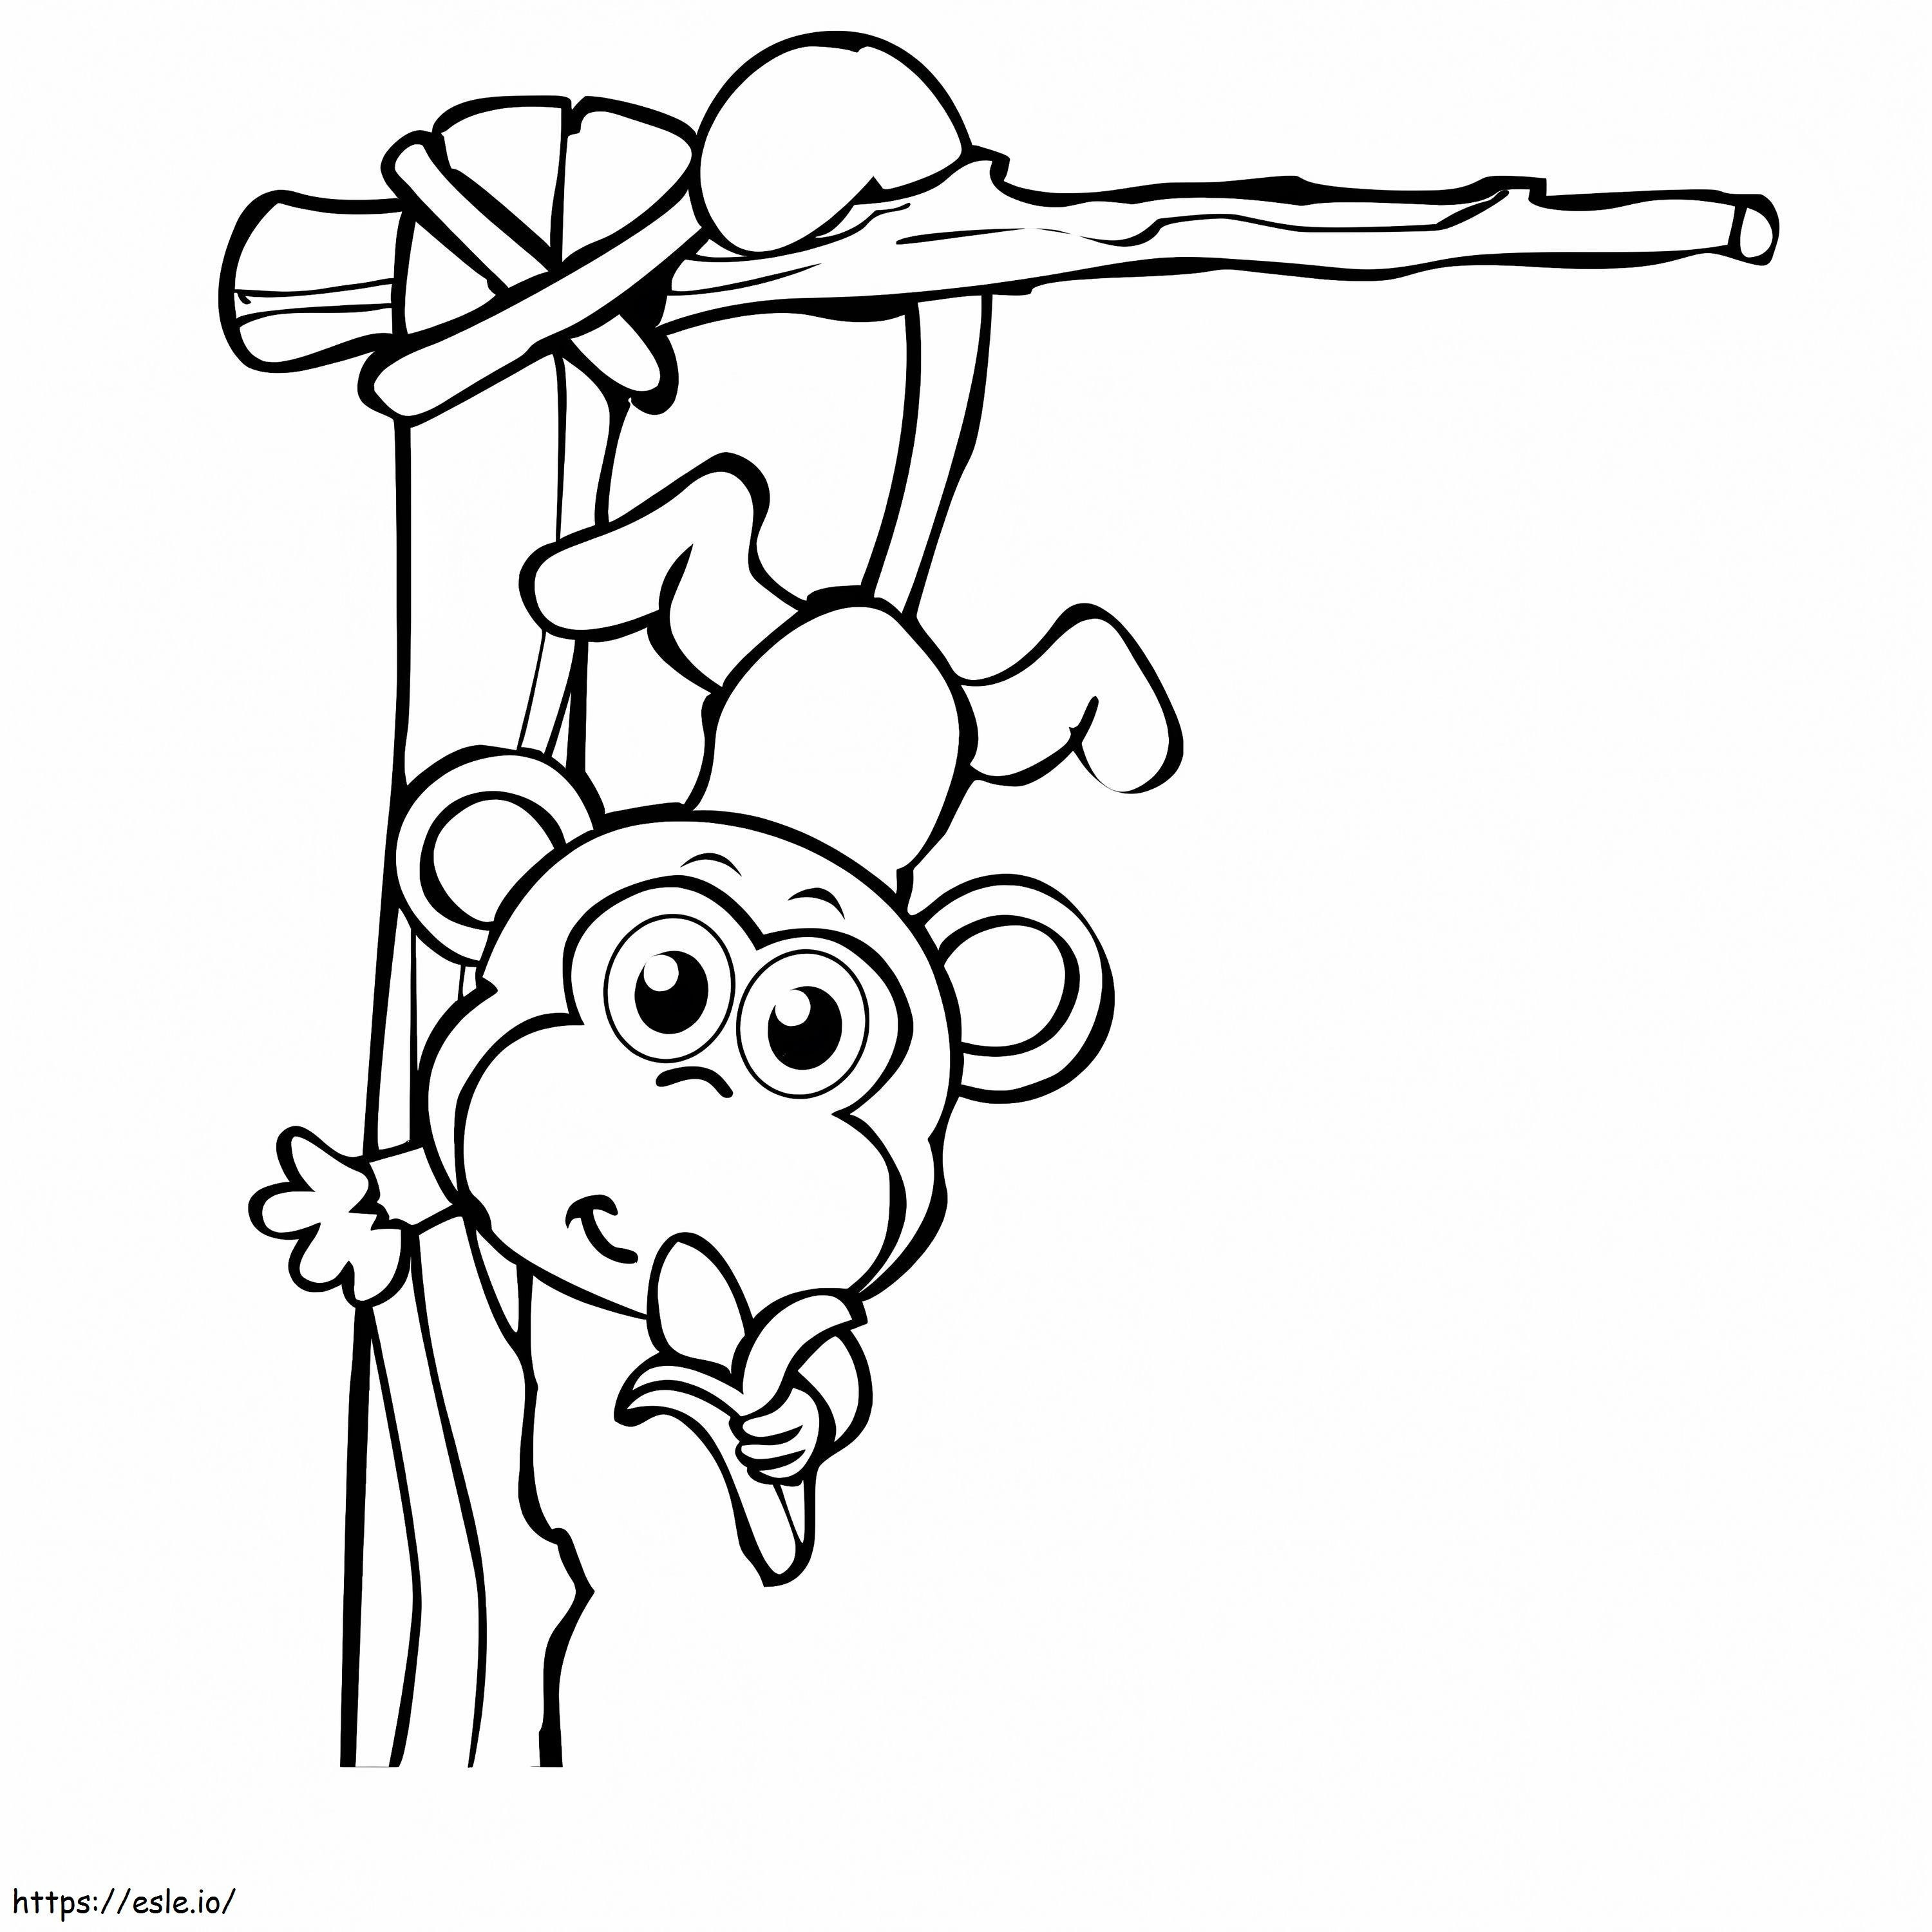 Affe klettert auf Bäume und isst Bananen ausmalbilder